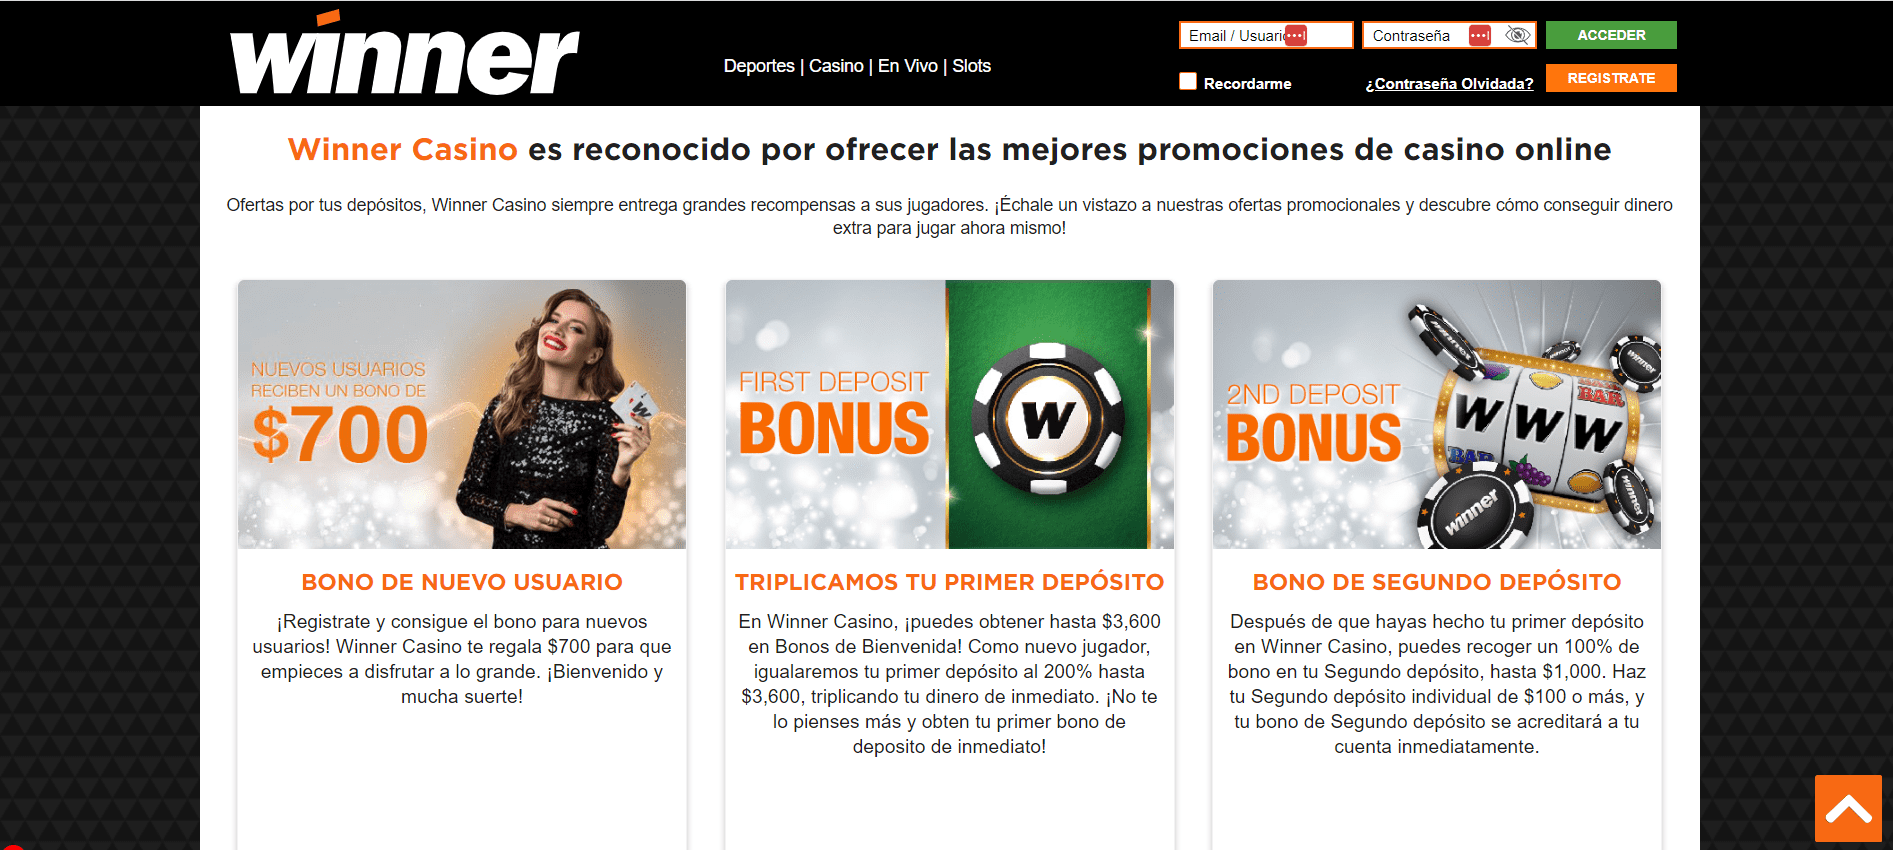 Bonos de Winner Casino MX